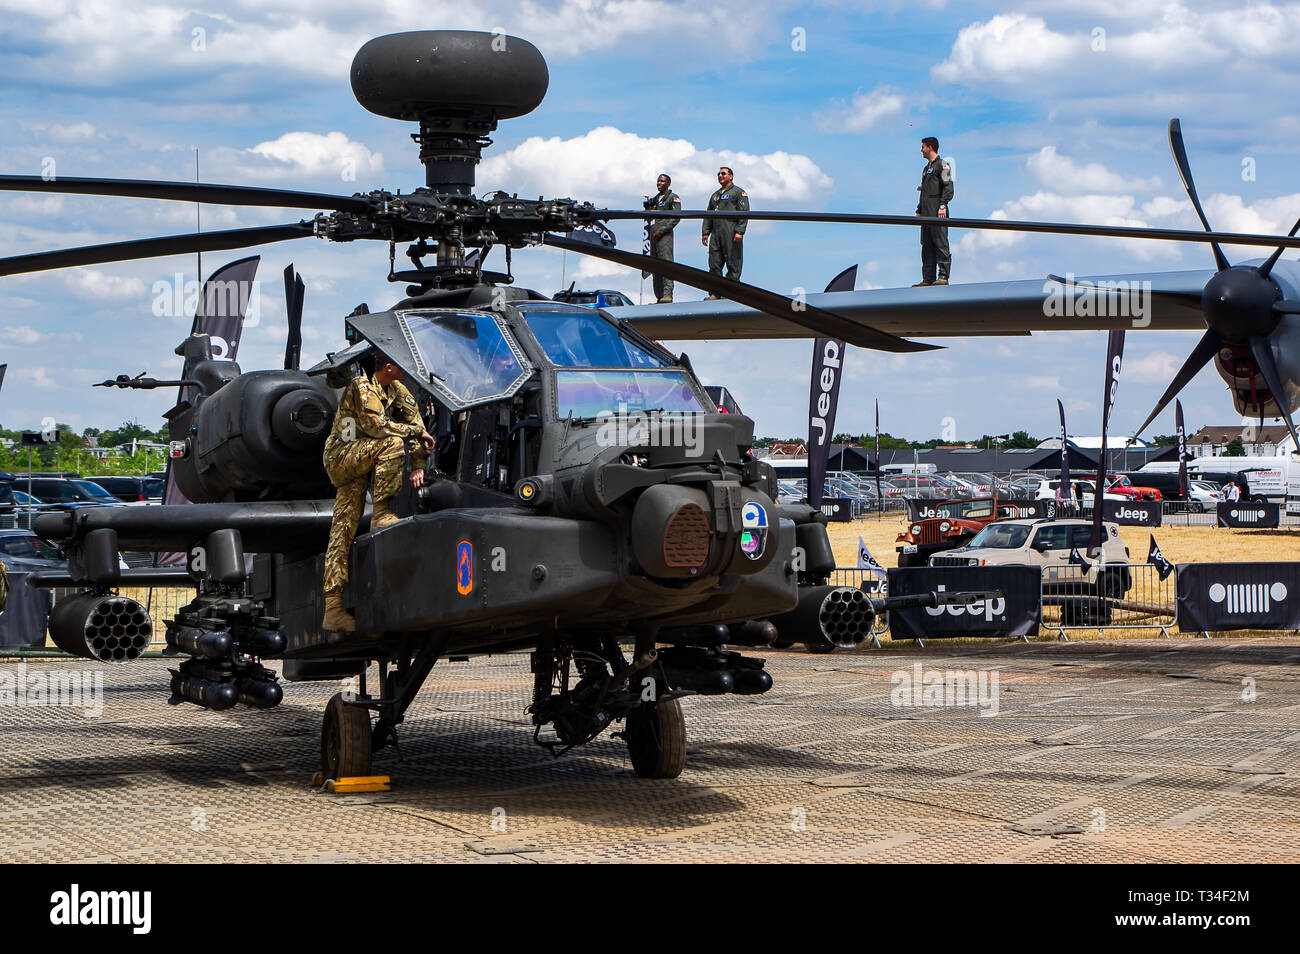 Un hélicoptère d'attaque Apache en exposition statique au Farnborough Air Show 2018 Banque D'Images